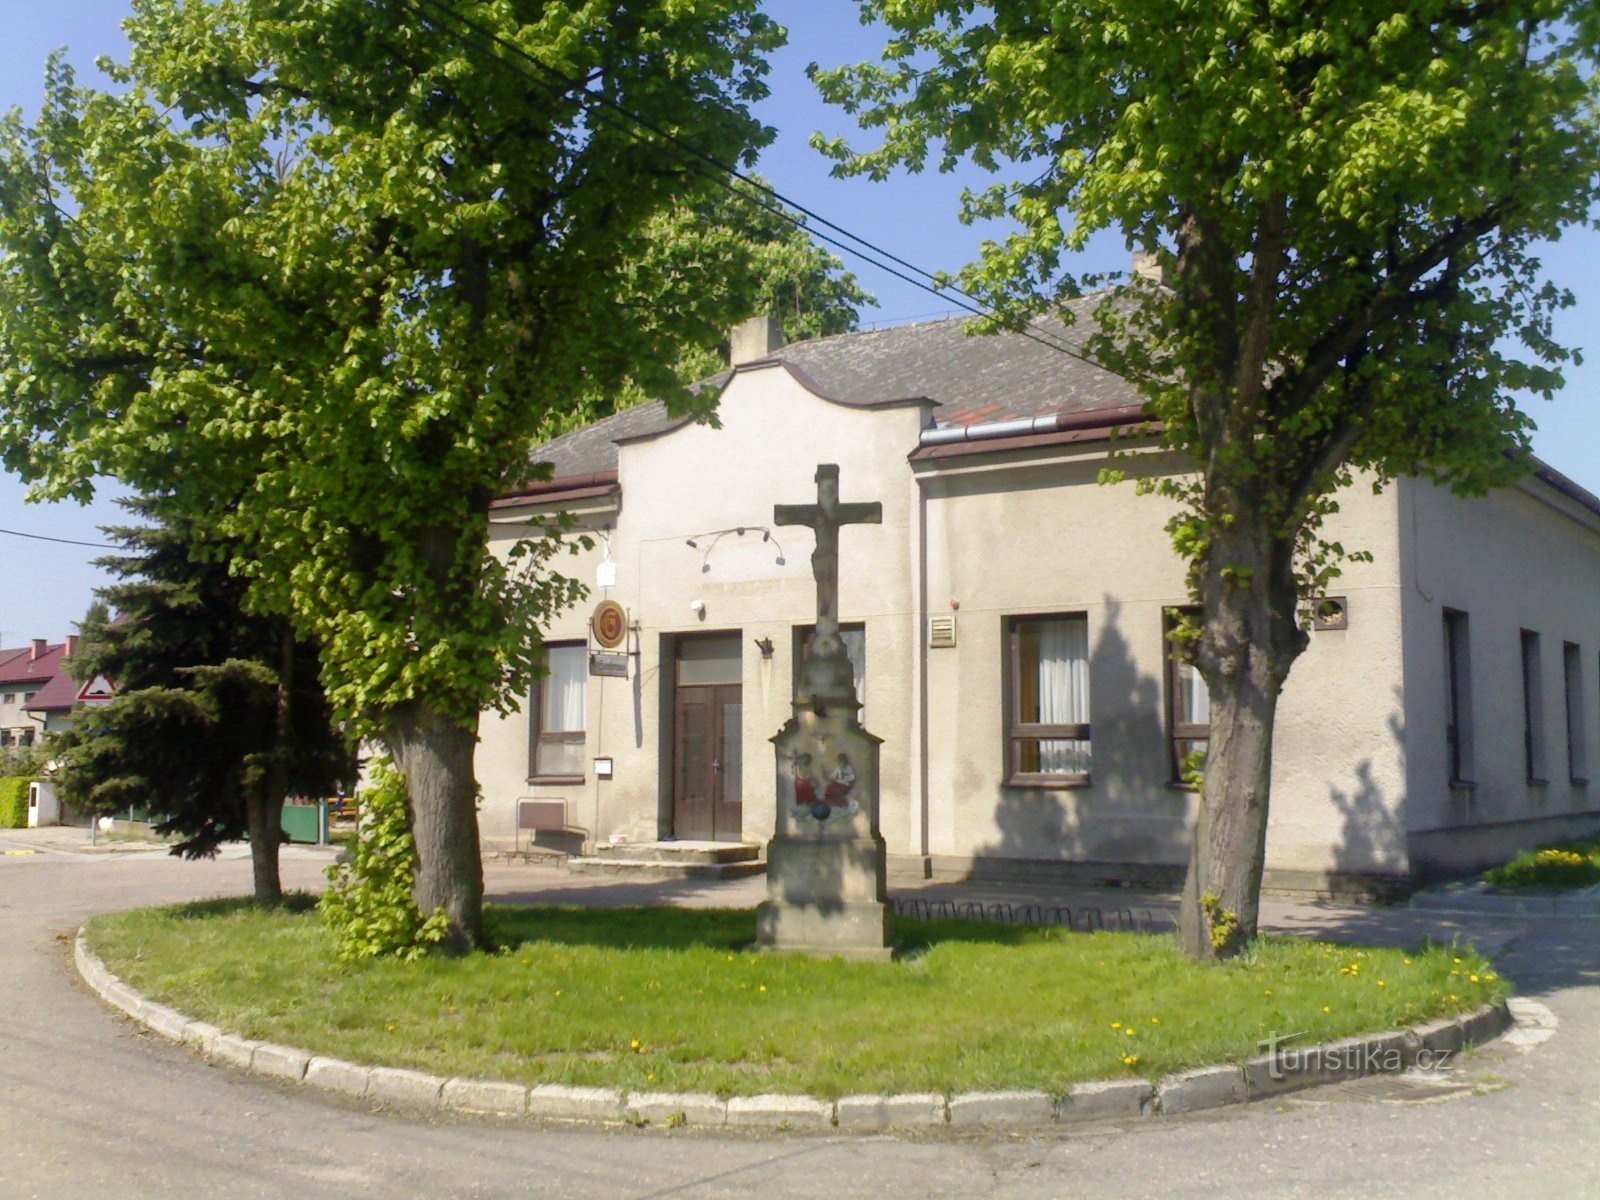 Strezetice - Monument de la Crucifixion